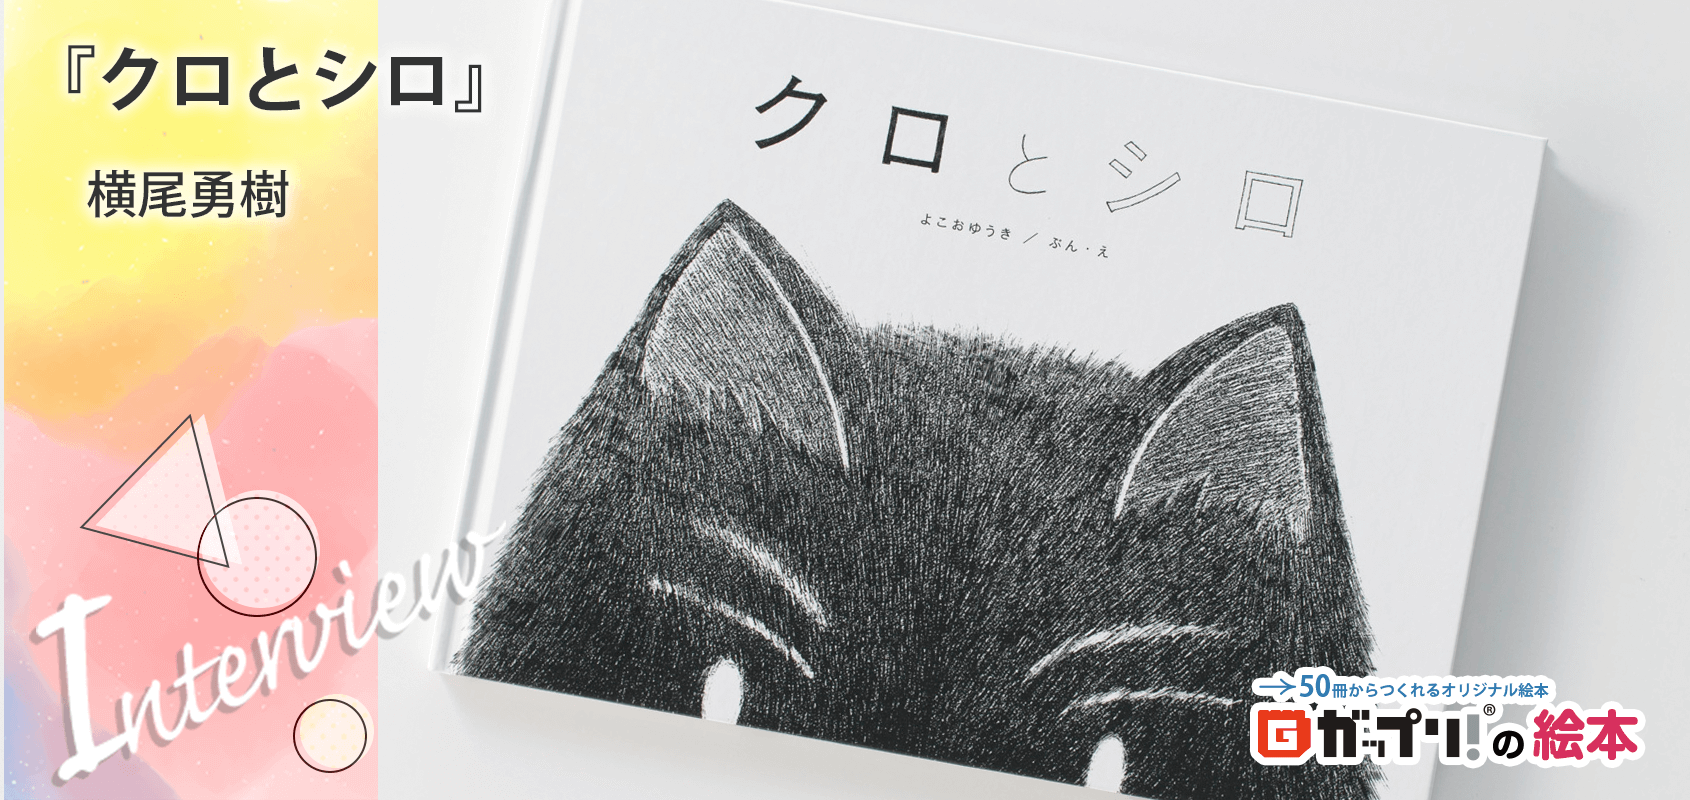 横尾勇樹様製作のオリジナル絵本『クロとシロ』